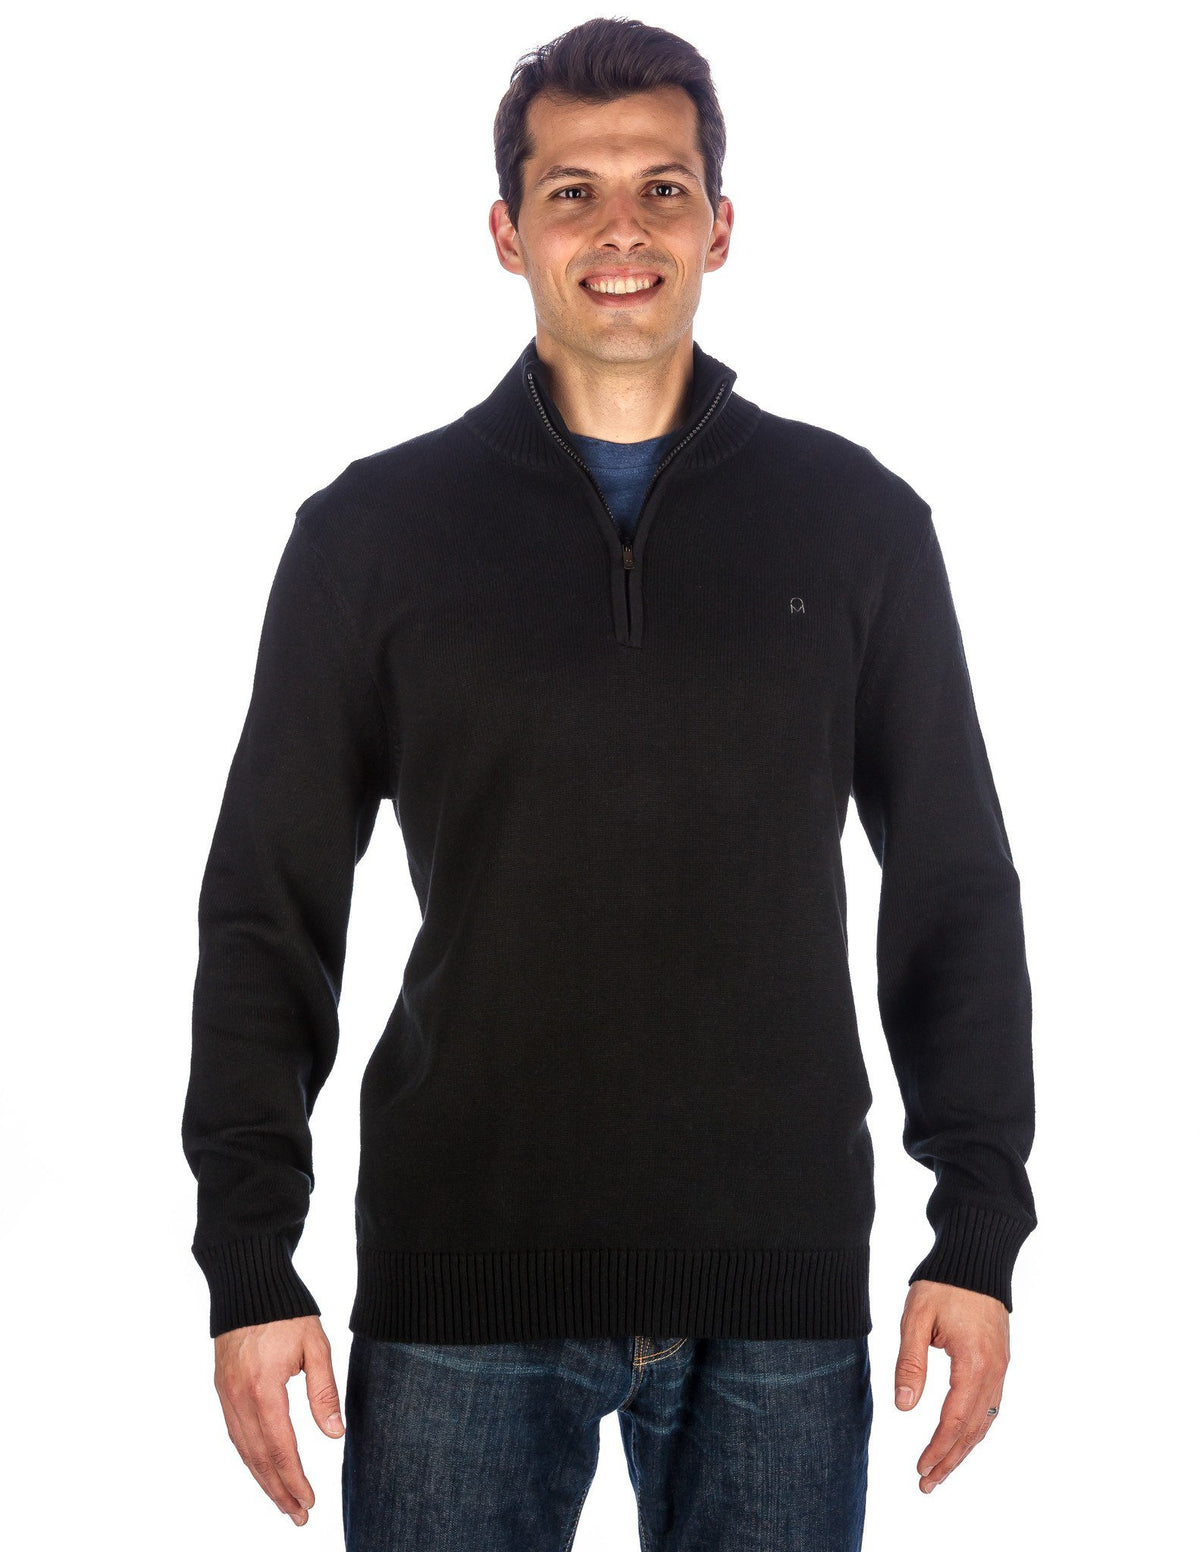 Men's 100% Cotton Half-Zip Pullover Sweater - Black